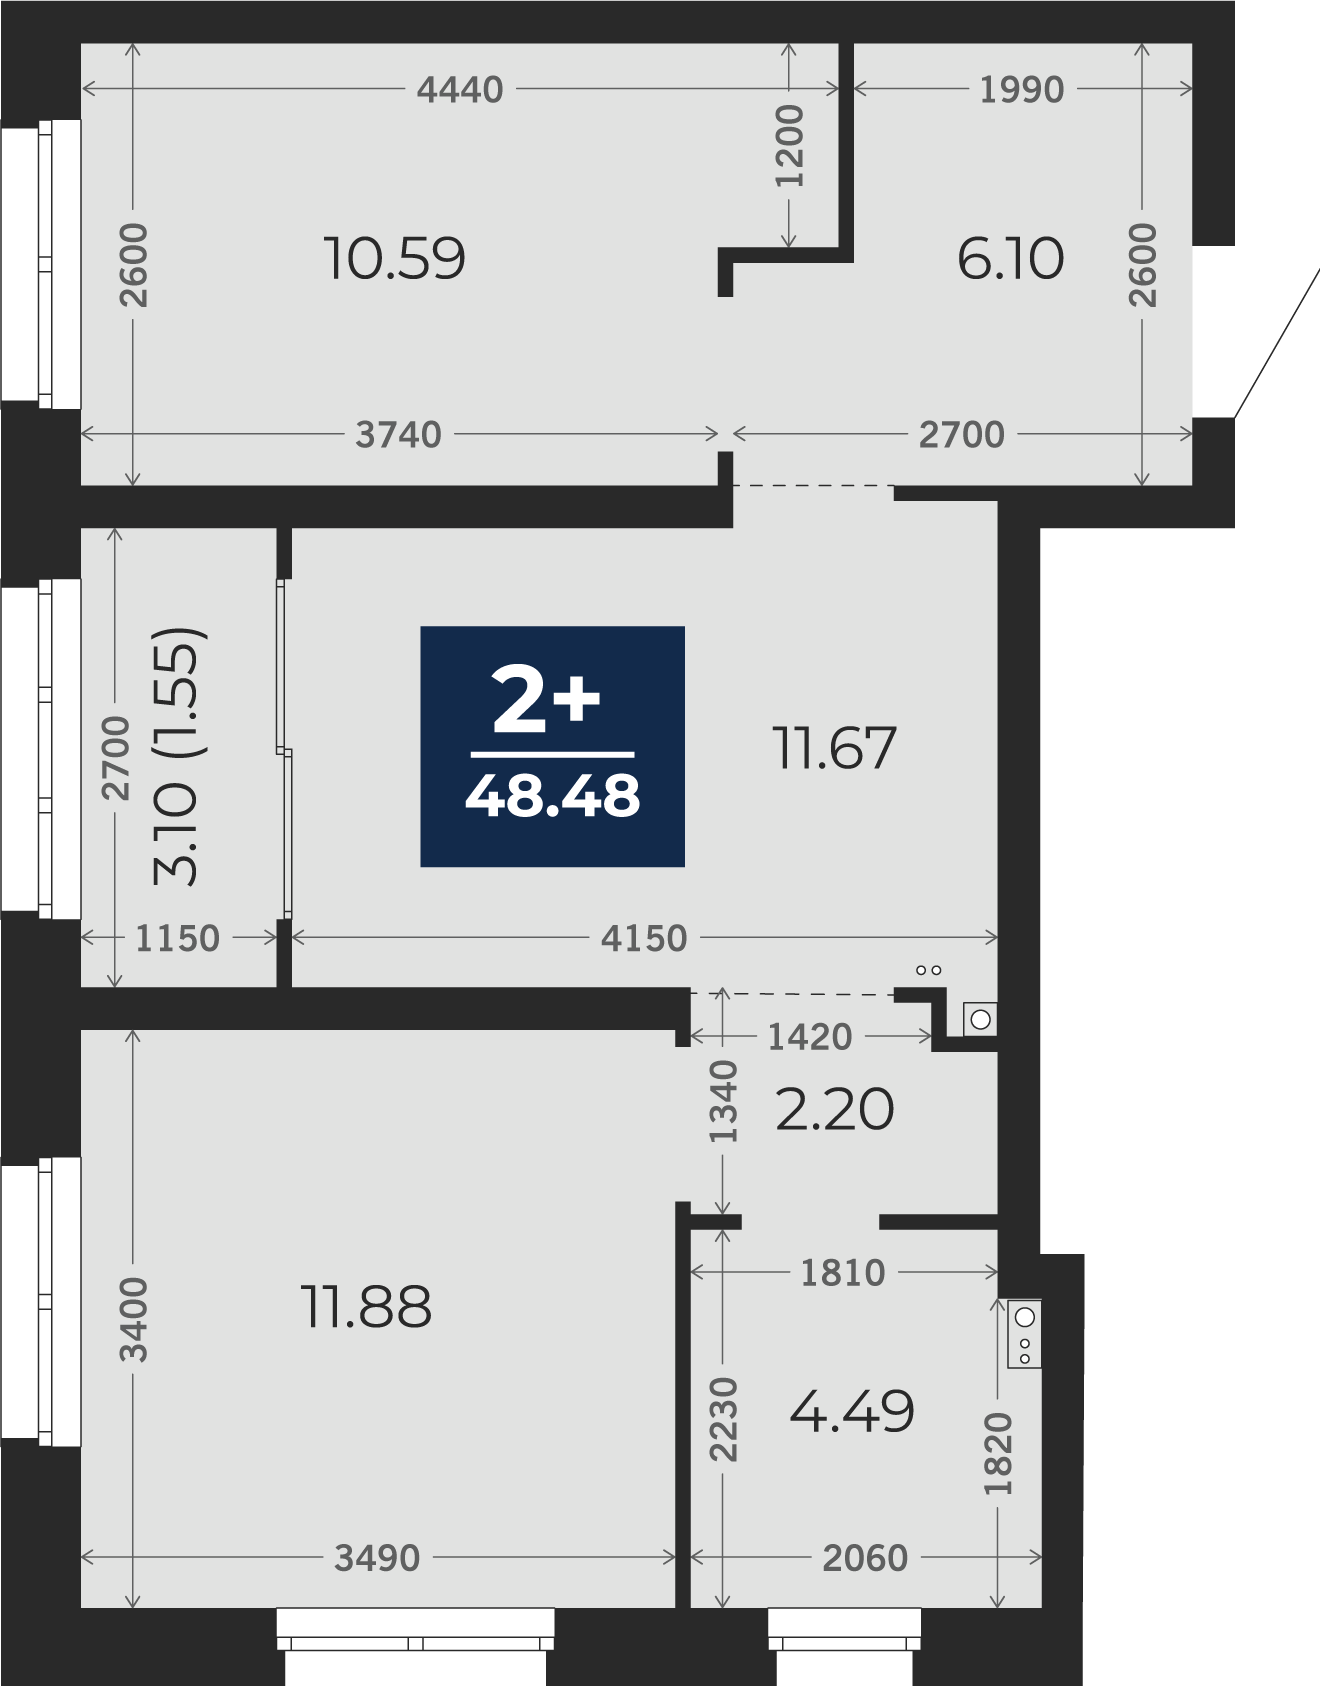 Квартира № 39, 2-комнатная, 48.48 кв. м, 2 этаж